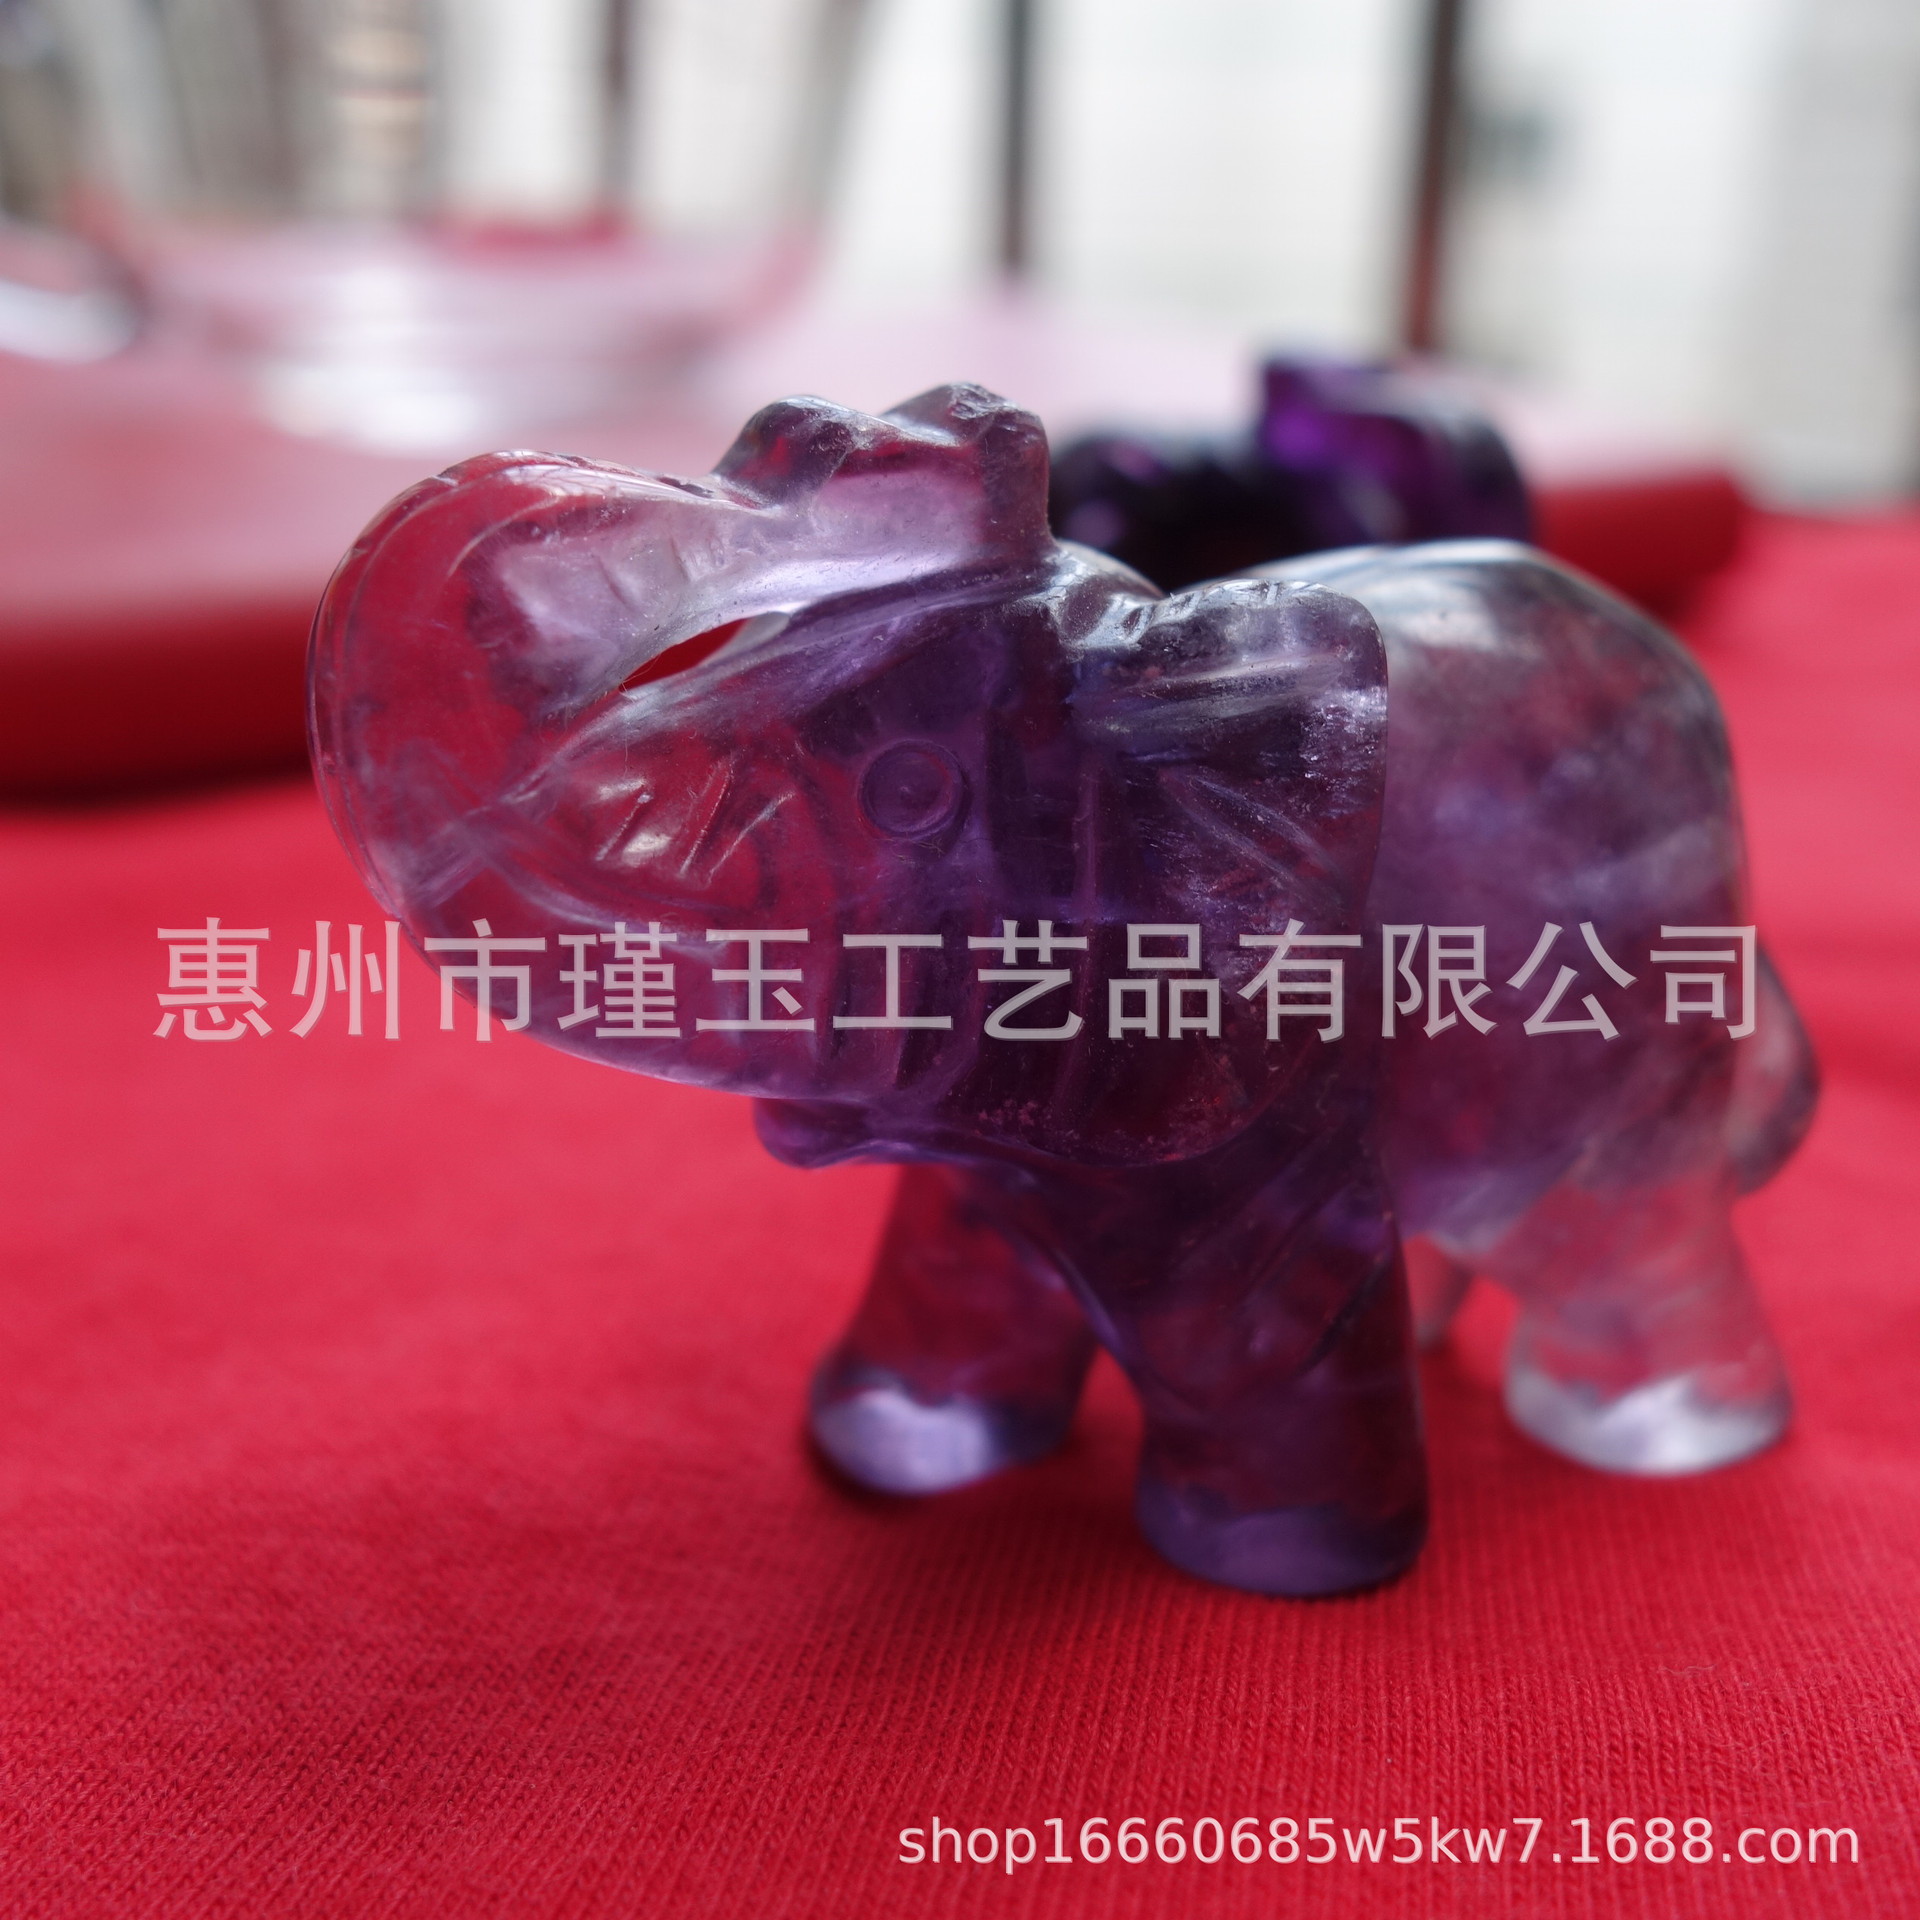 工厂供货 手工雕刻吉祥大象 办公司摆件饰品 玉石水晶动物工艺品